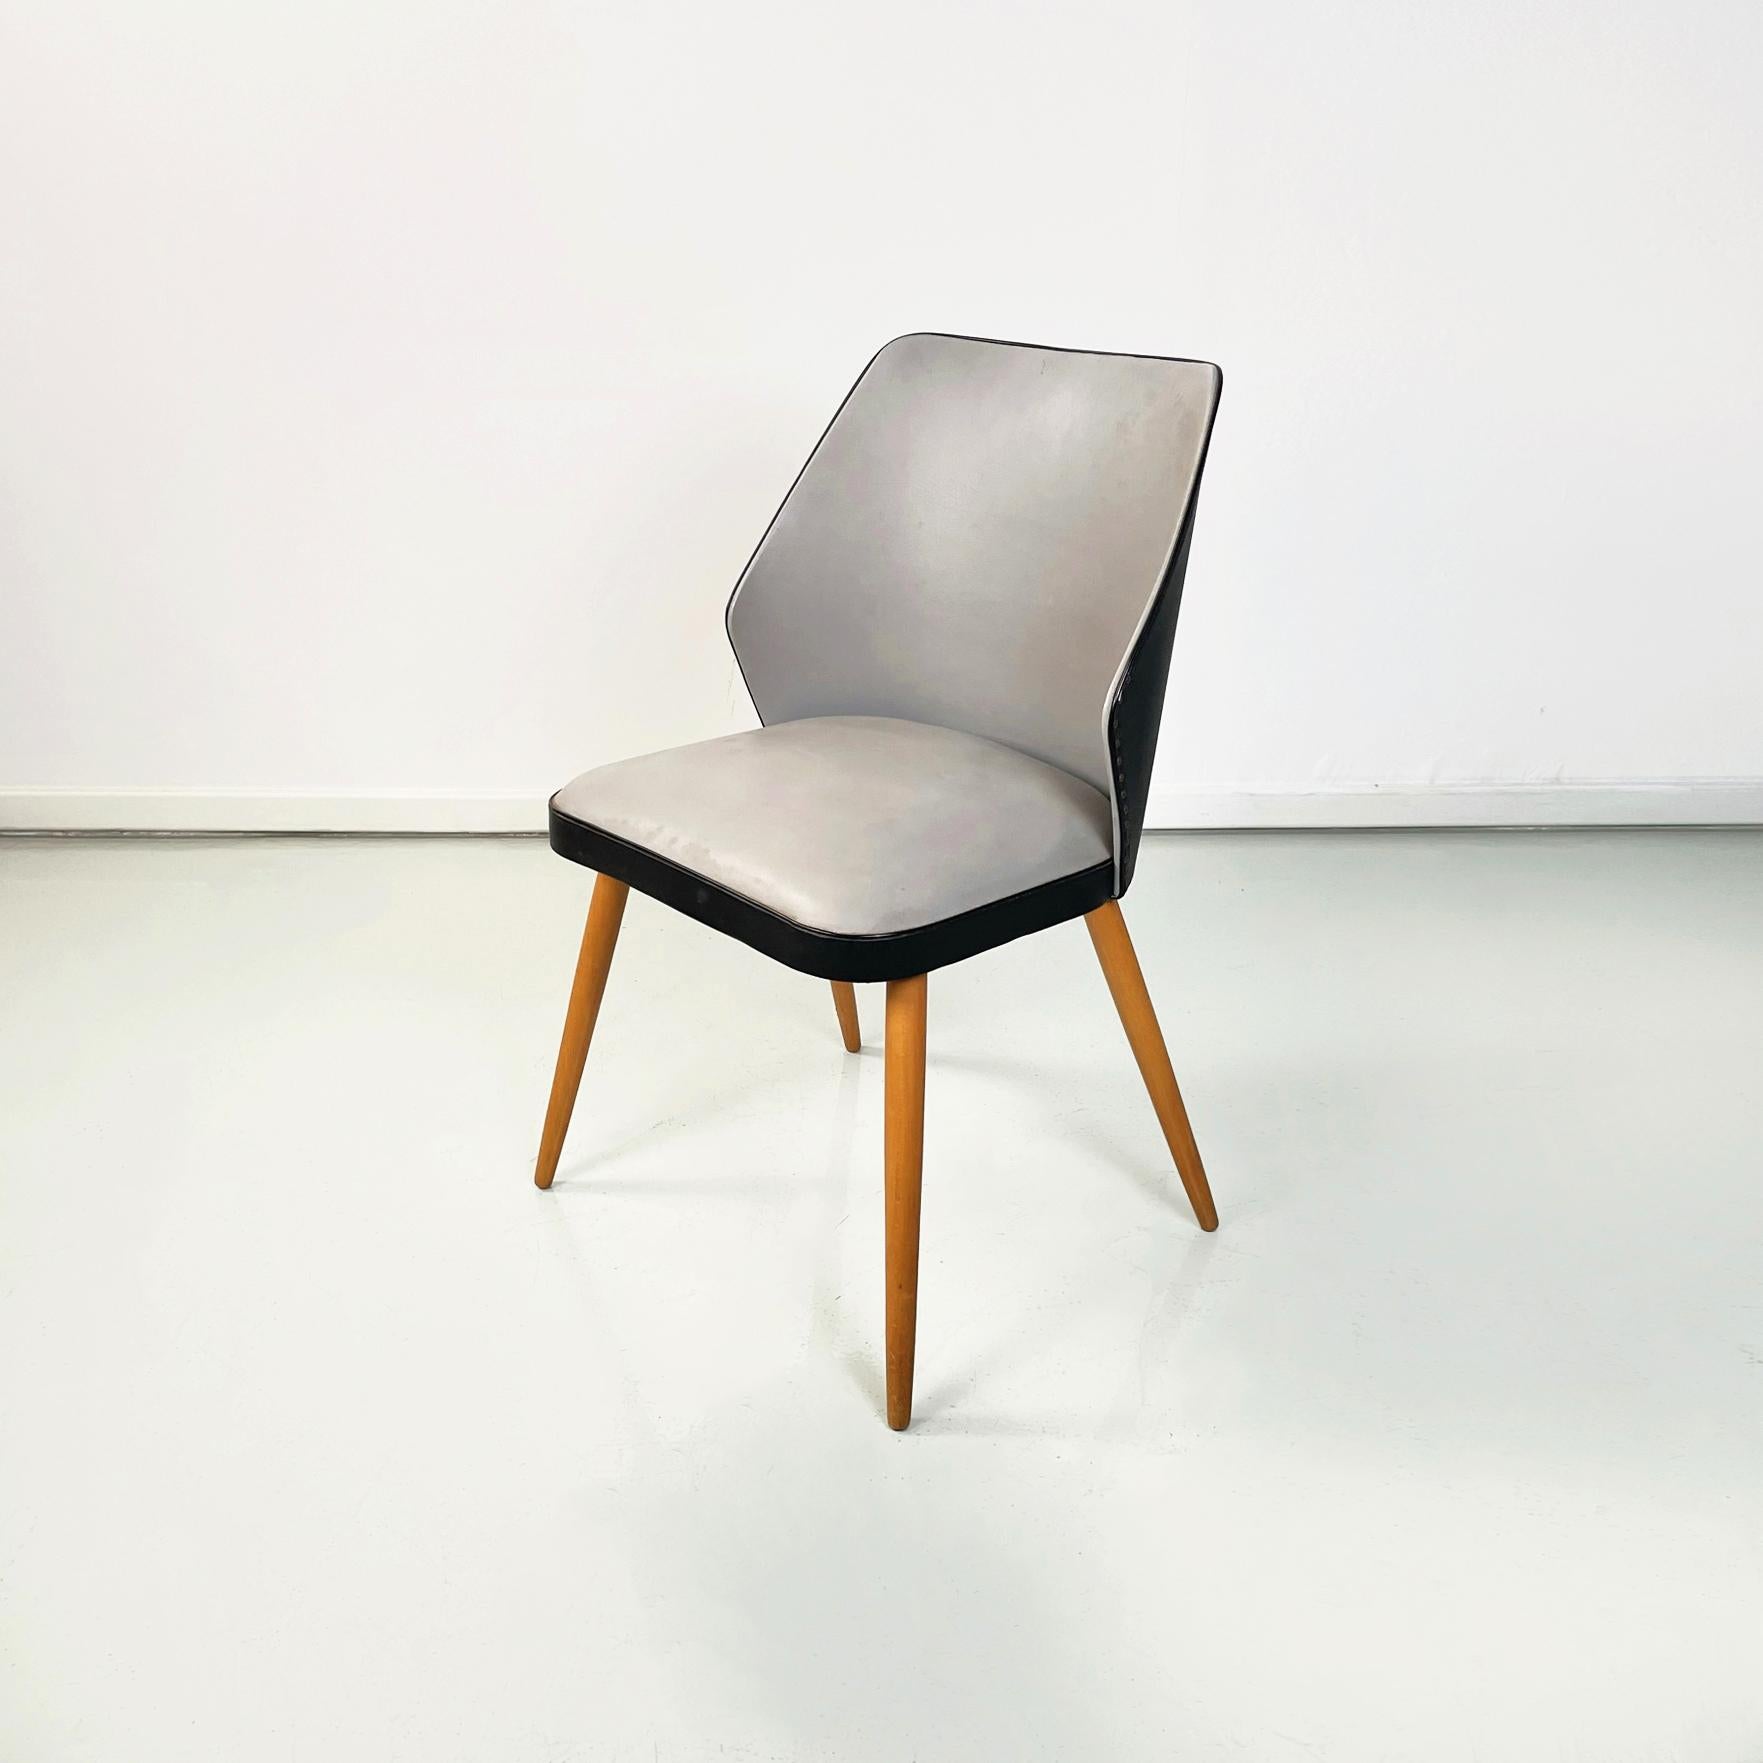 Moderne italienische Stühle aus schwarzem und grauem Leder und Holz, 1980er Jahre
Set aus drei Stühlen mit quadratischem Sitz  mit abgerundeten Ecken in zweifarbigem grauem und schwarzem Leder. Die geschwungene Rückenlehne aus zweifarbigem schwarzem